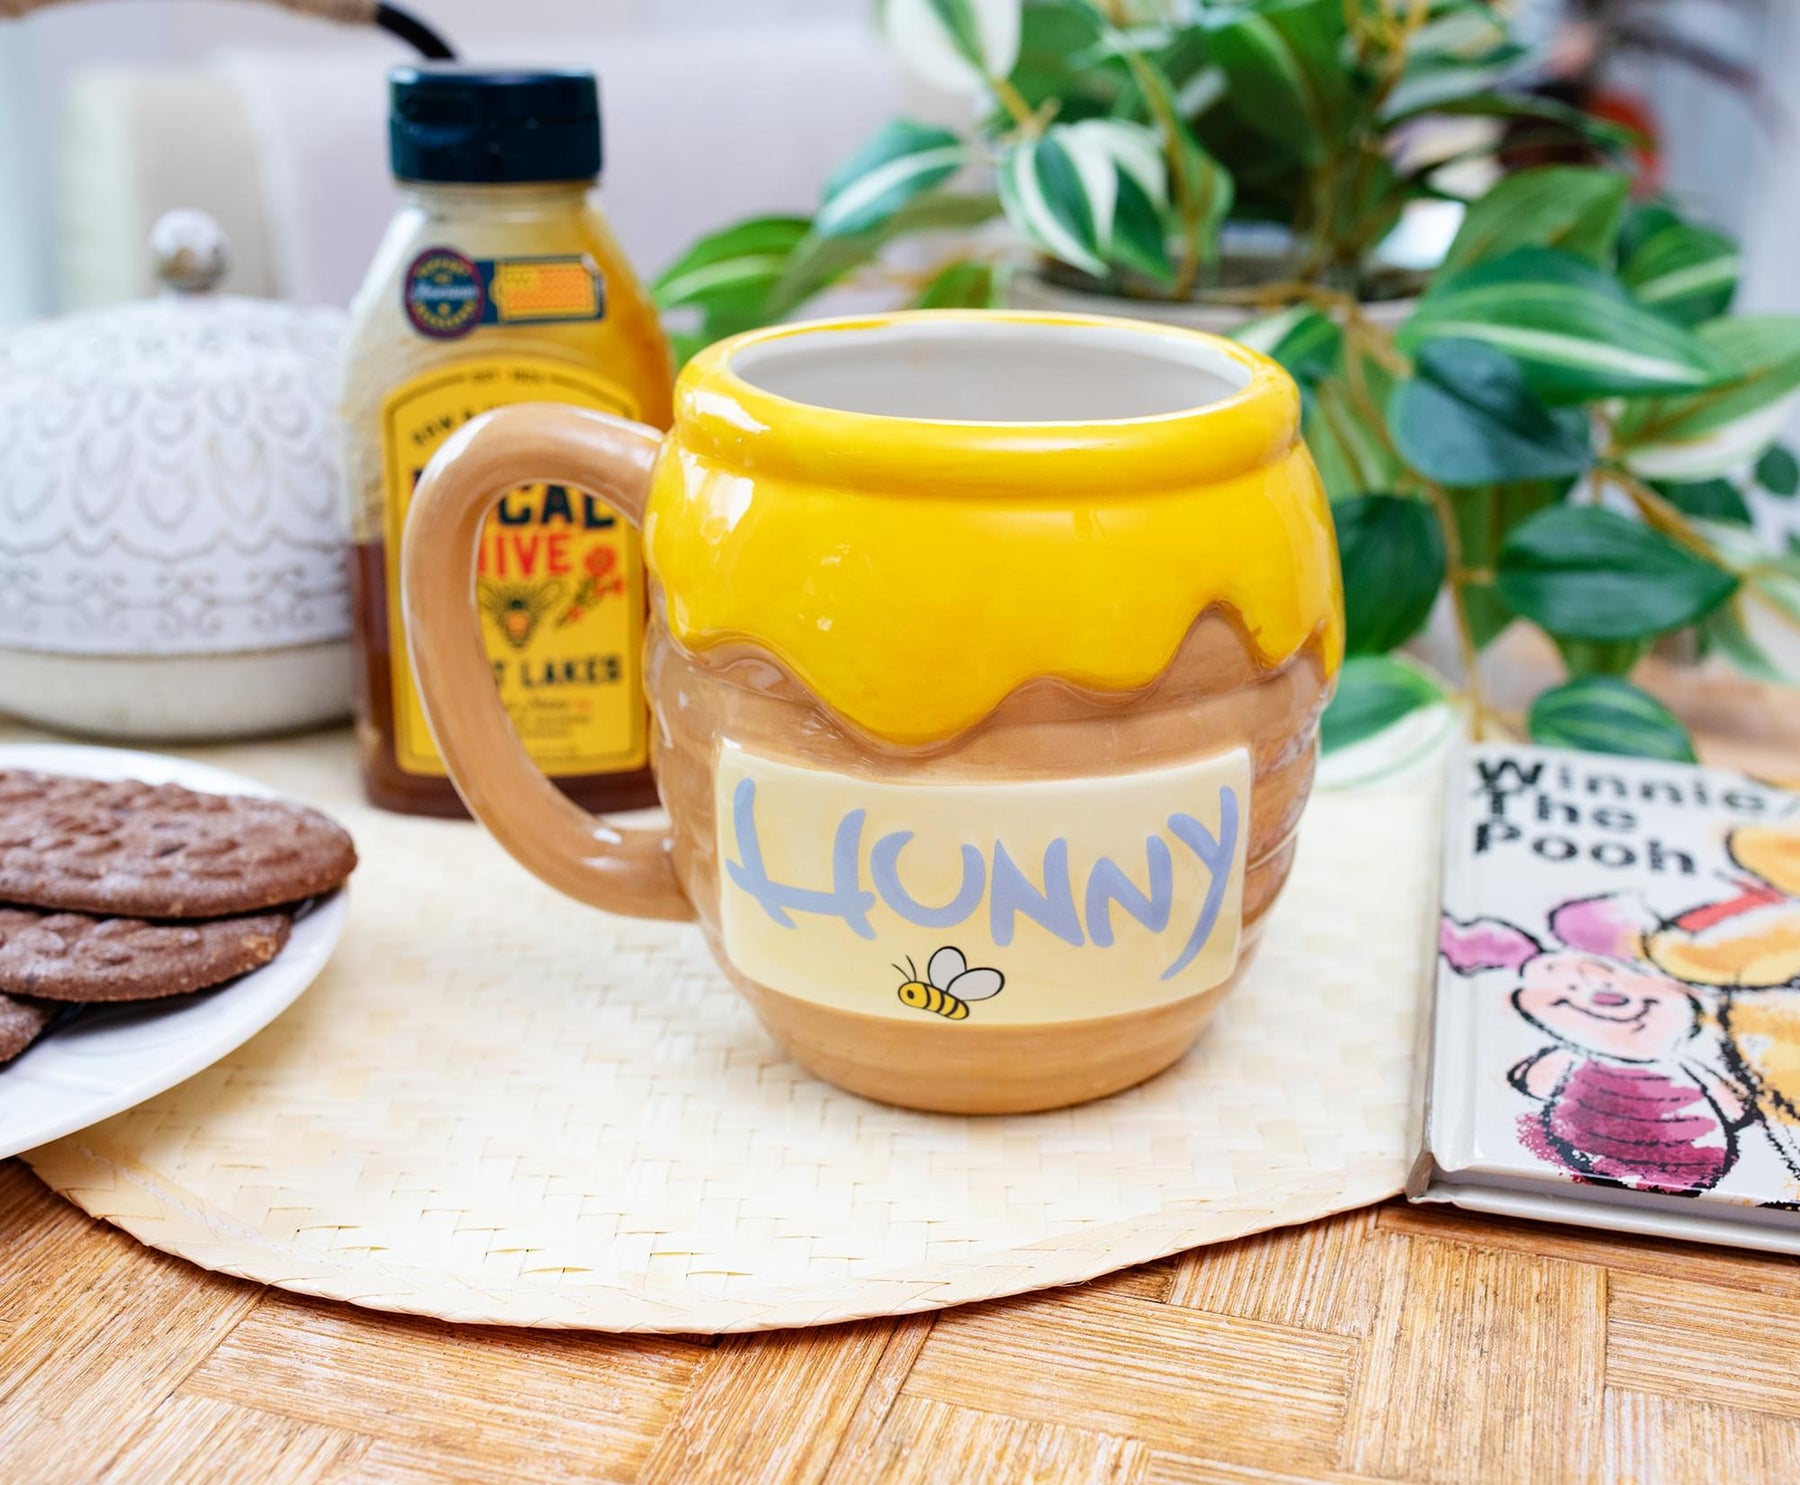 Disney Winnie the Pooh Honey Pot Sculpted Ceramic Mug | Holds 23 Ounces